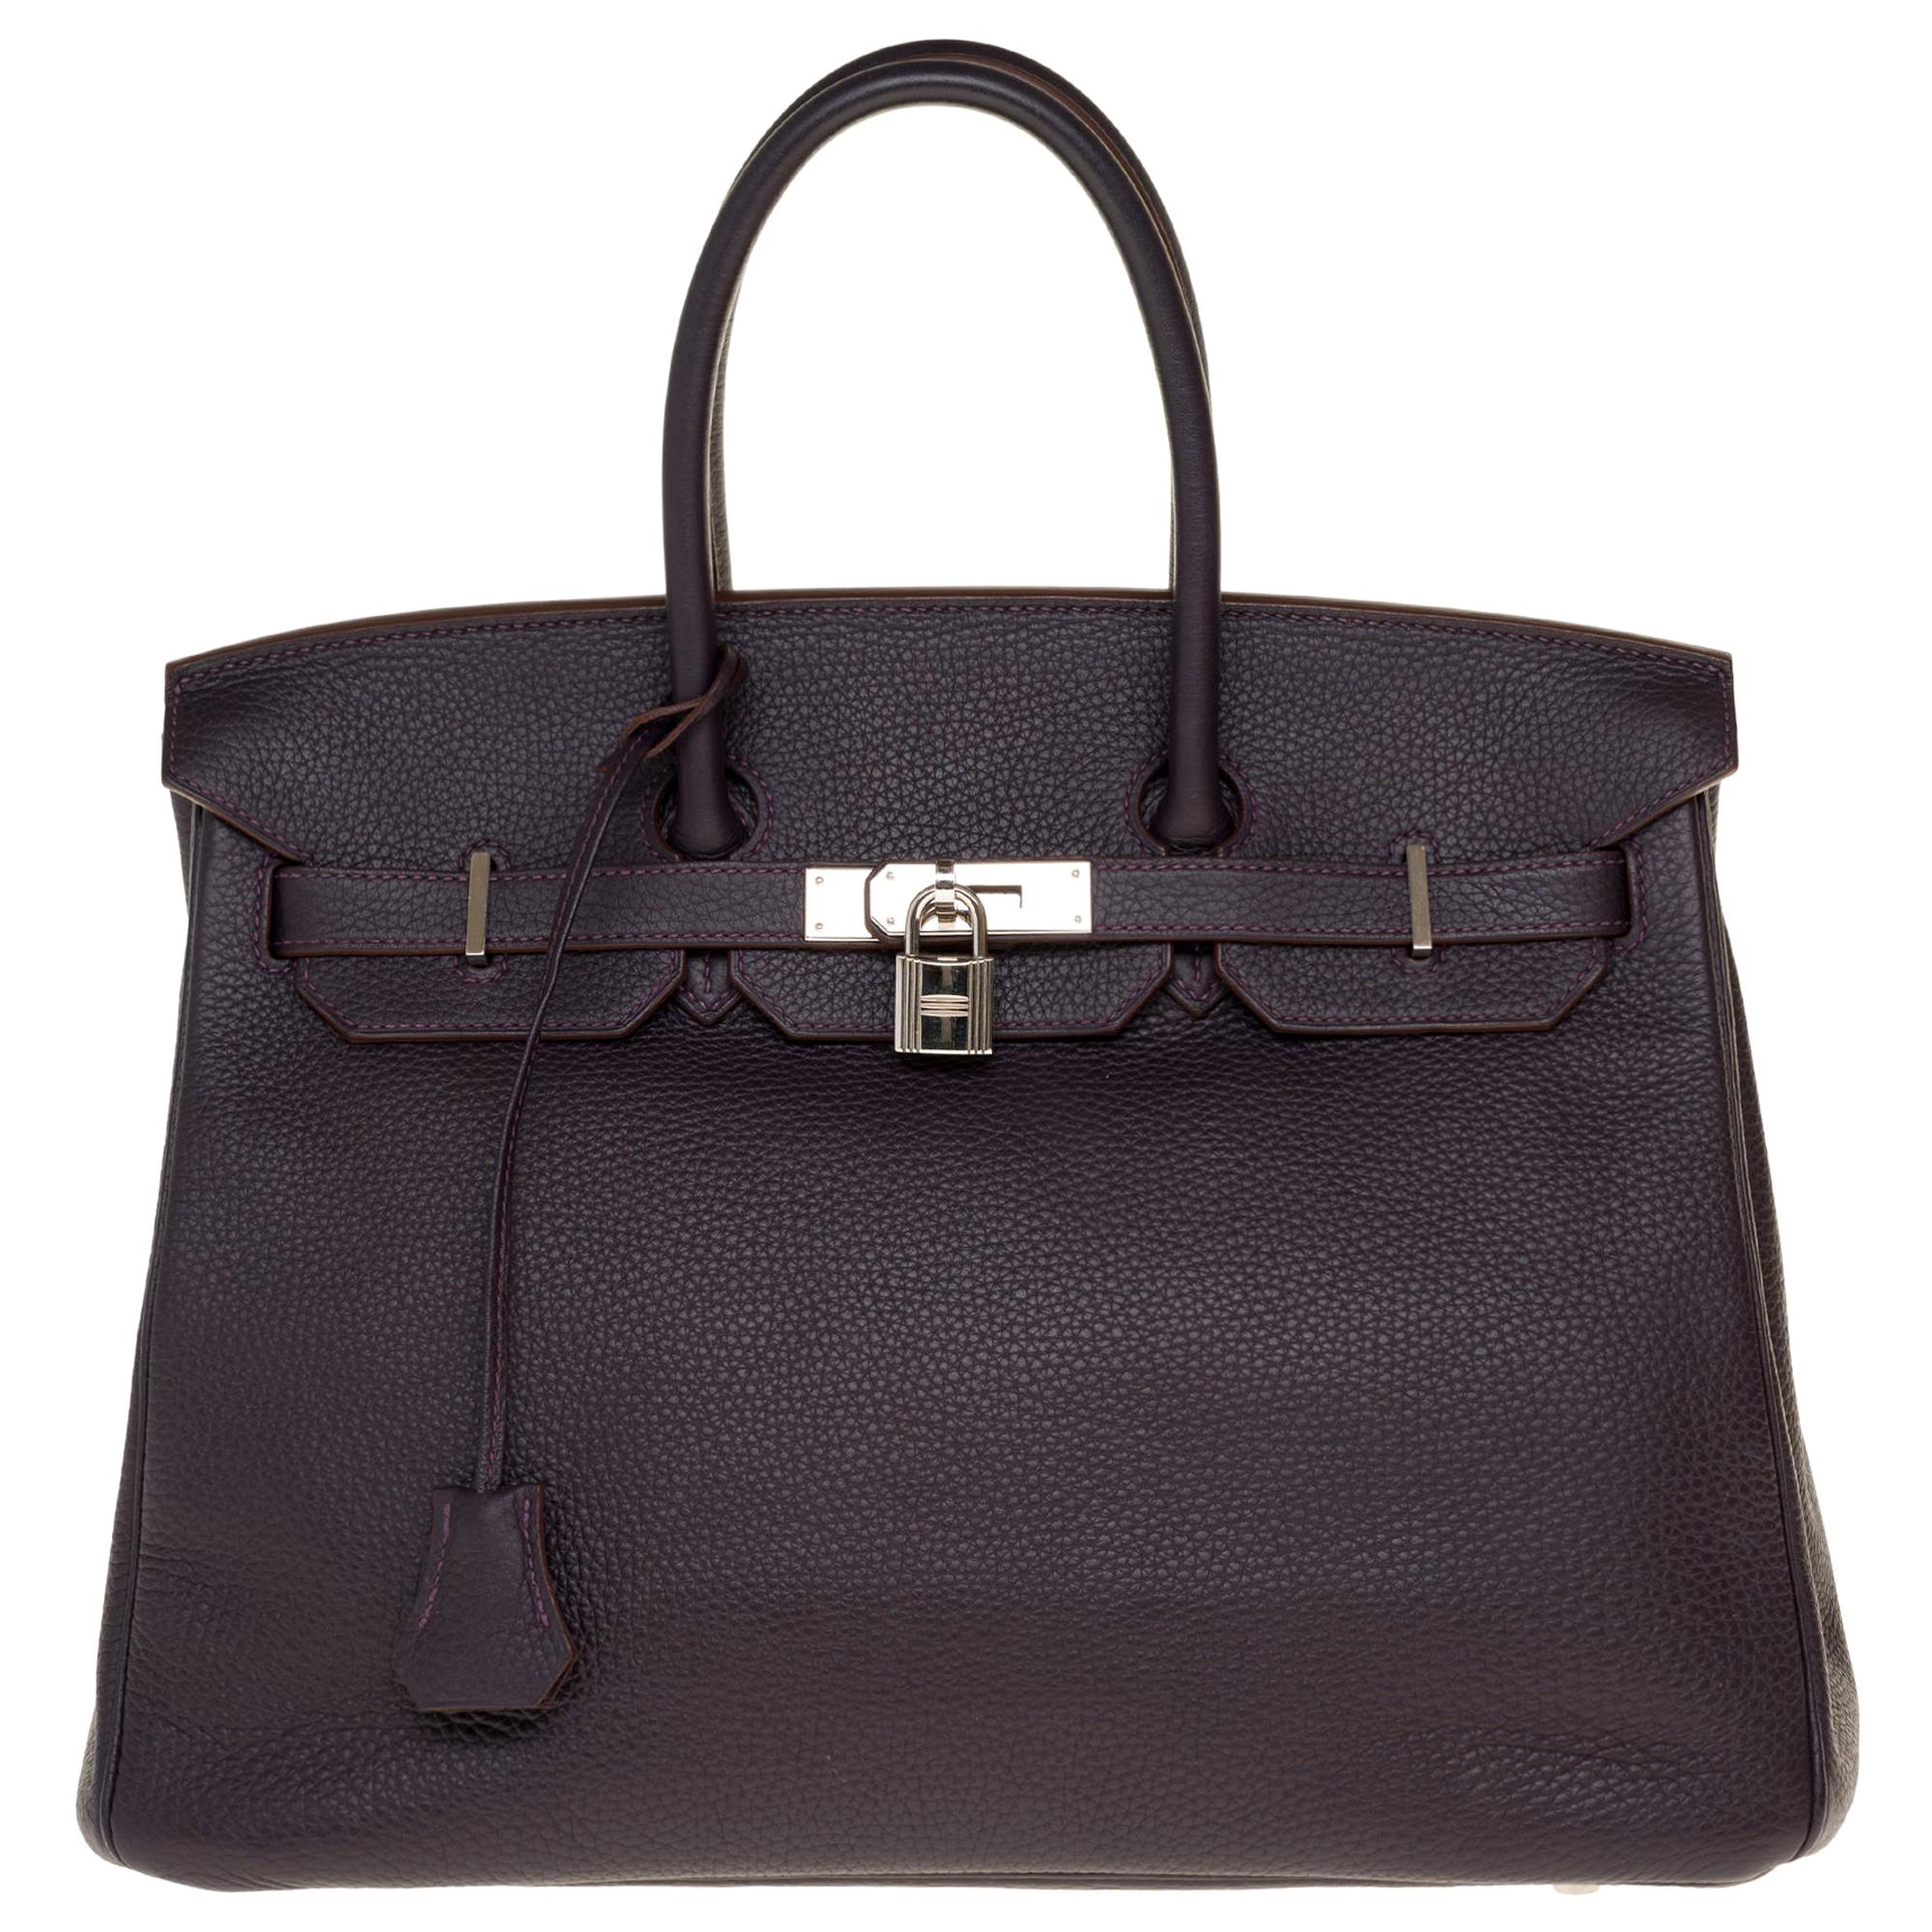 Hermès Birkin 35 handbag in Purple Togo leather with Silver Palladium hardware !